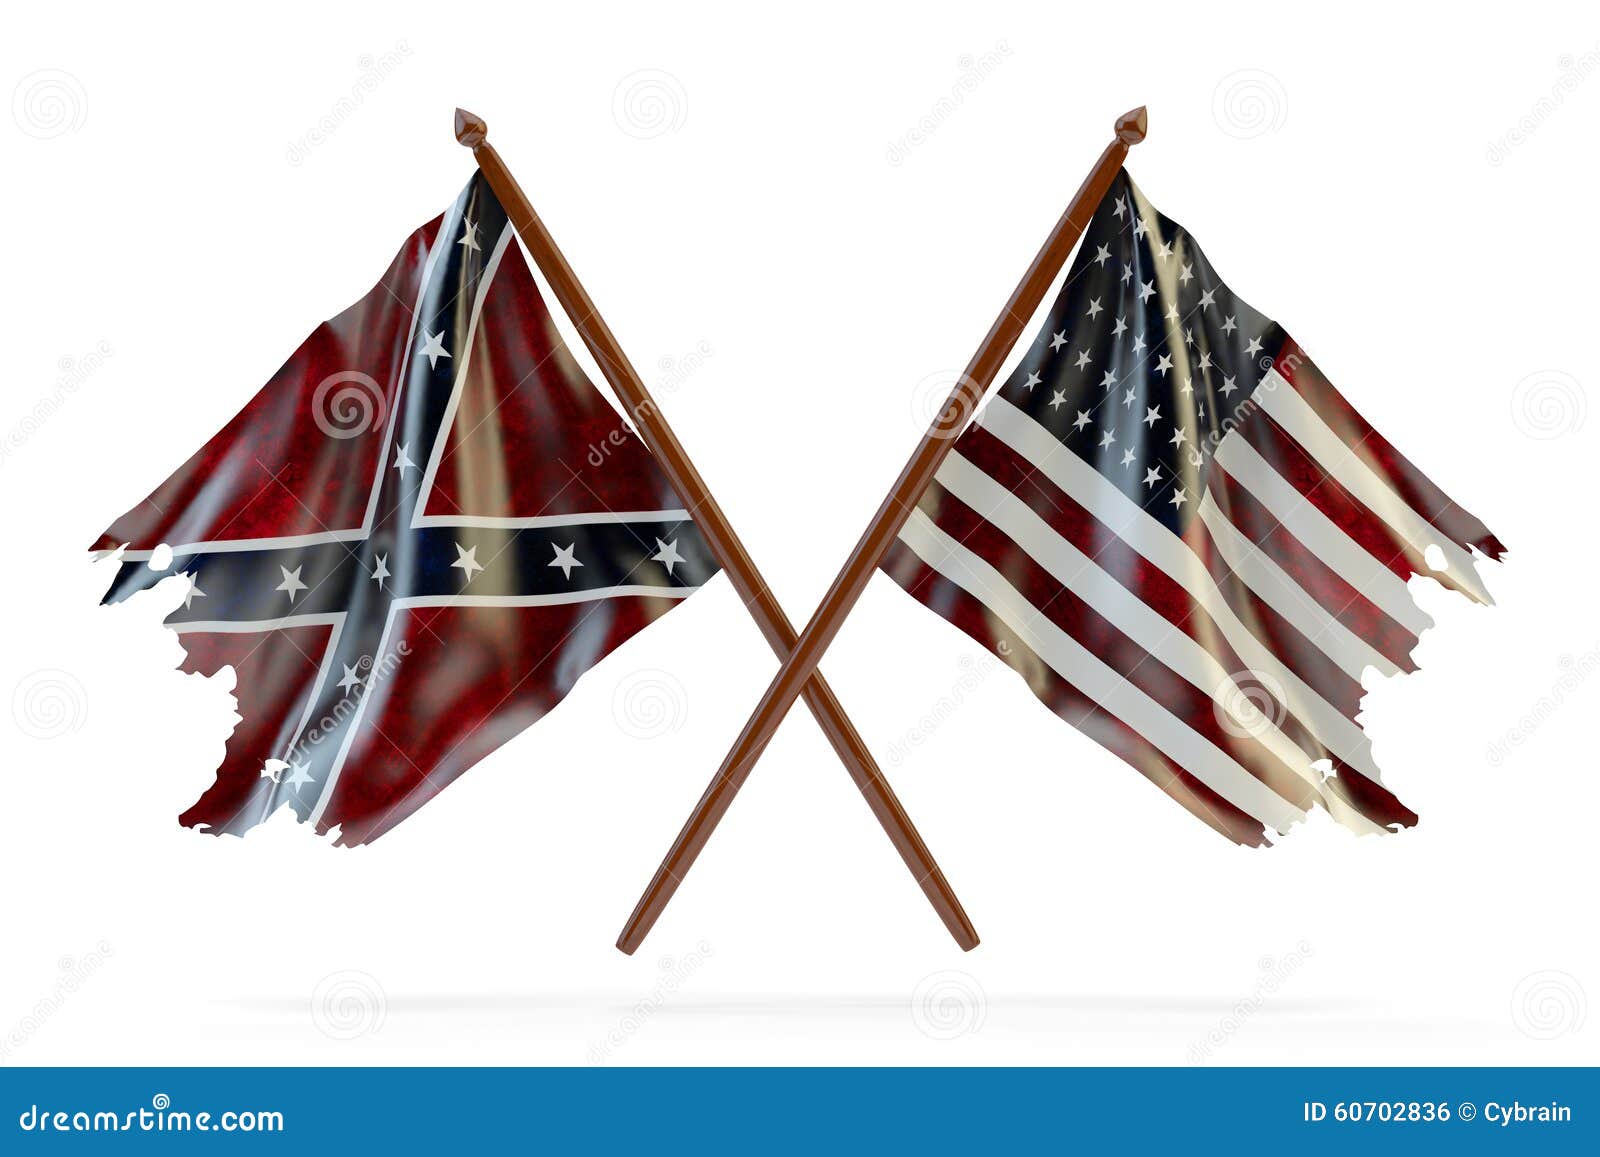 civil war flags clipart - photo #47